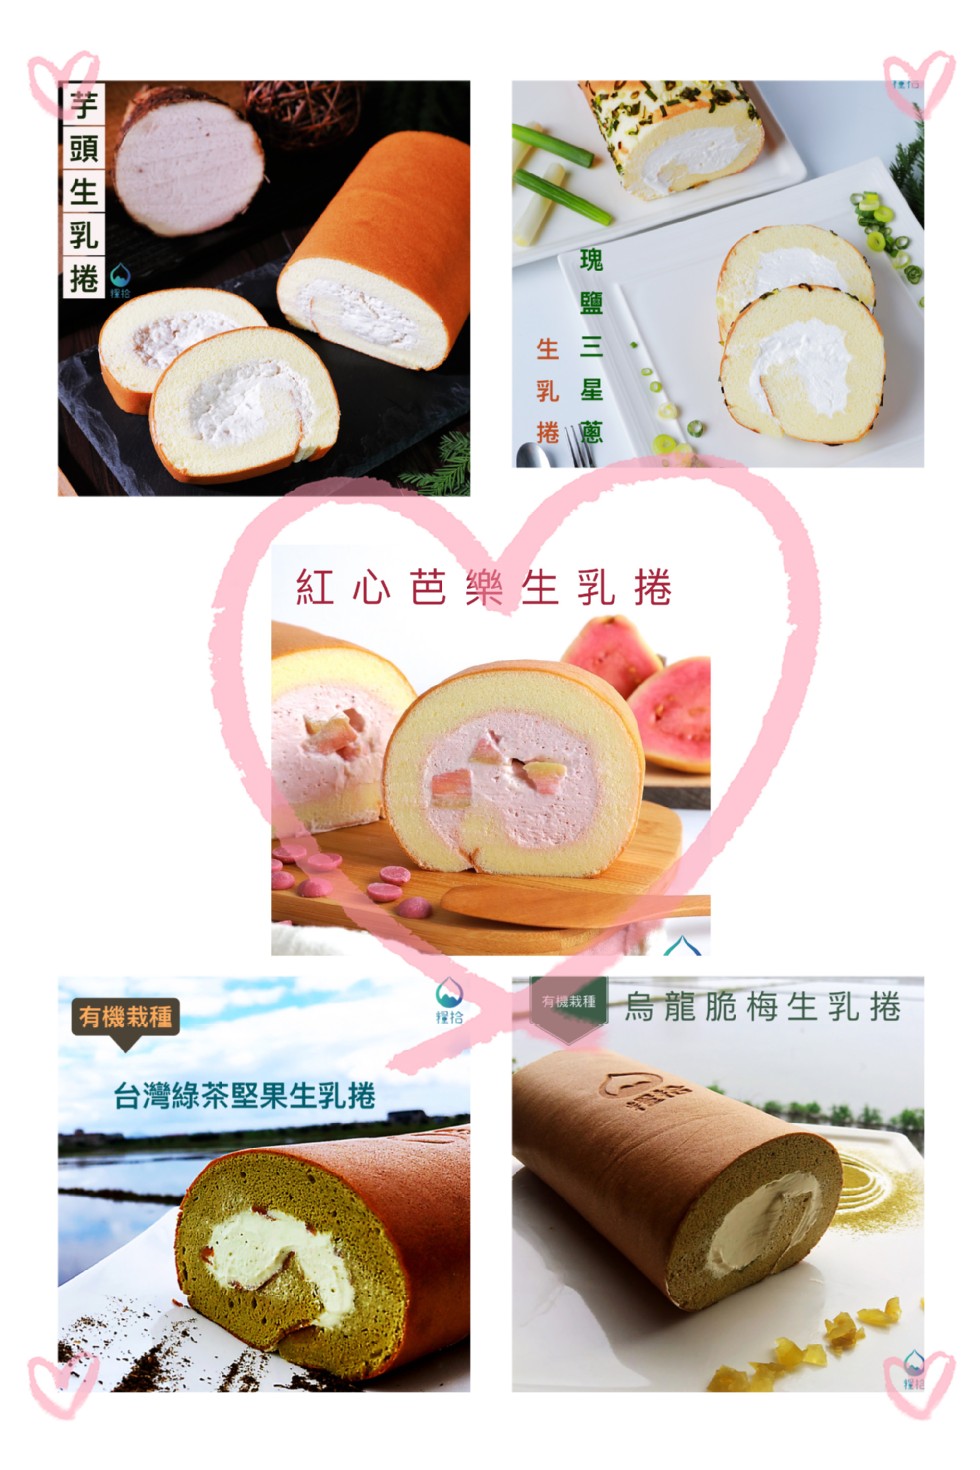 紅心芭樂生乳捲，有機我程烏龍脆梅生乳捲，有機栽種，台灣綠茶堅果生乳捲，芋頭生乳捲。